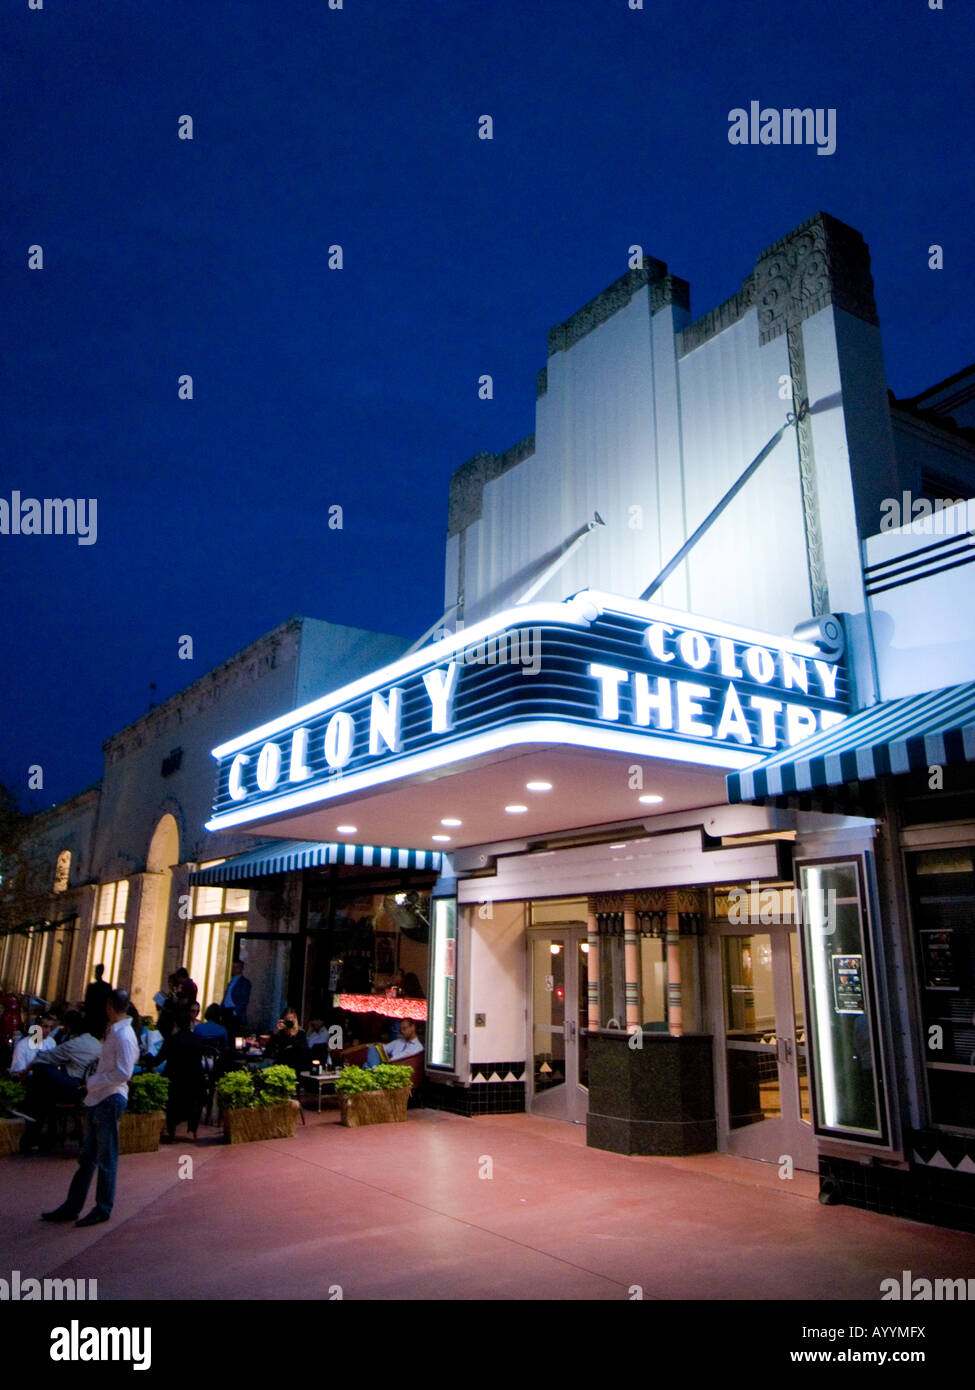 La colonie Theatre de Lincoln Road Mall, Miami, USA Banque D'Images